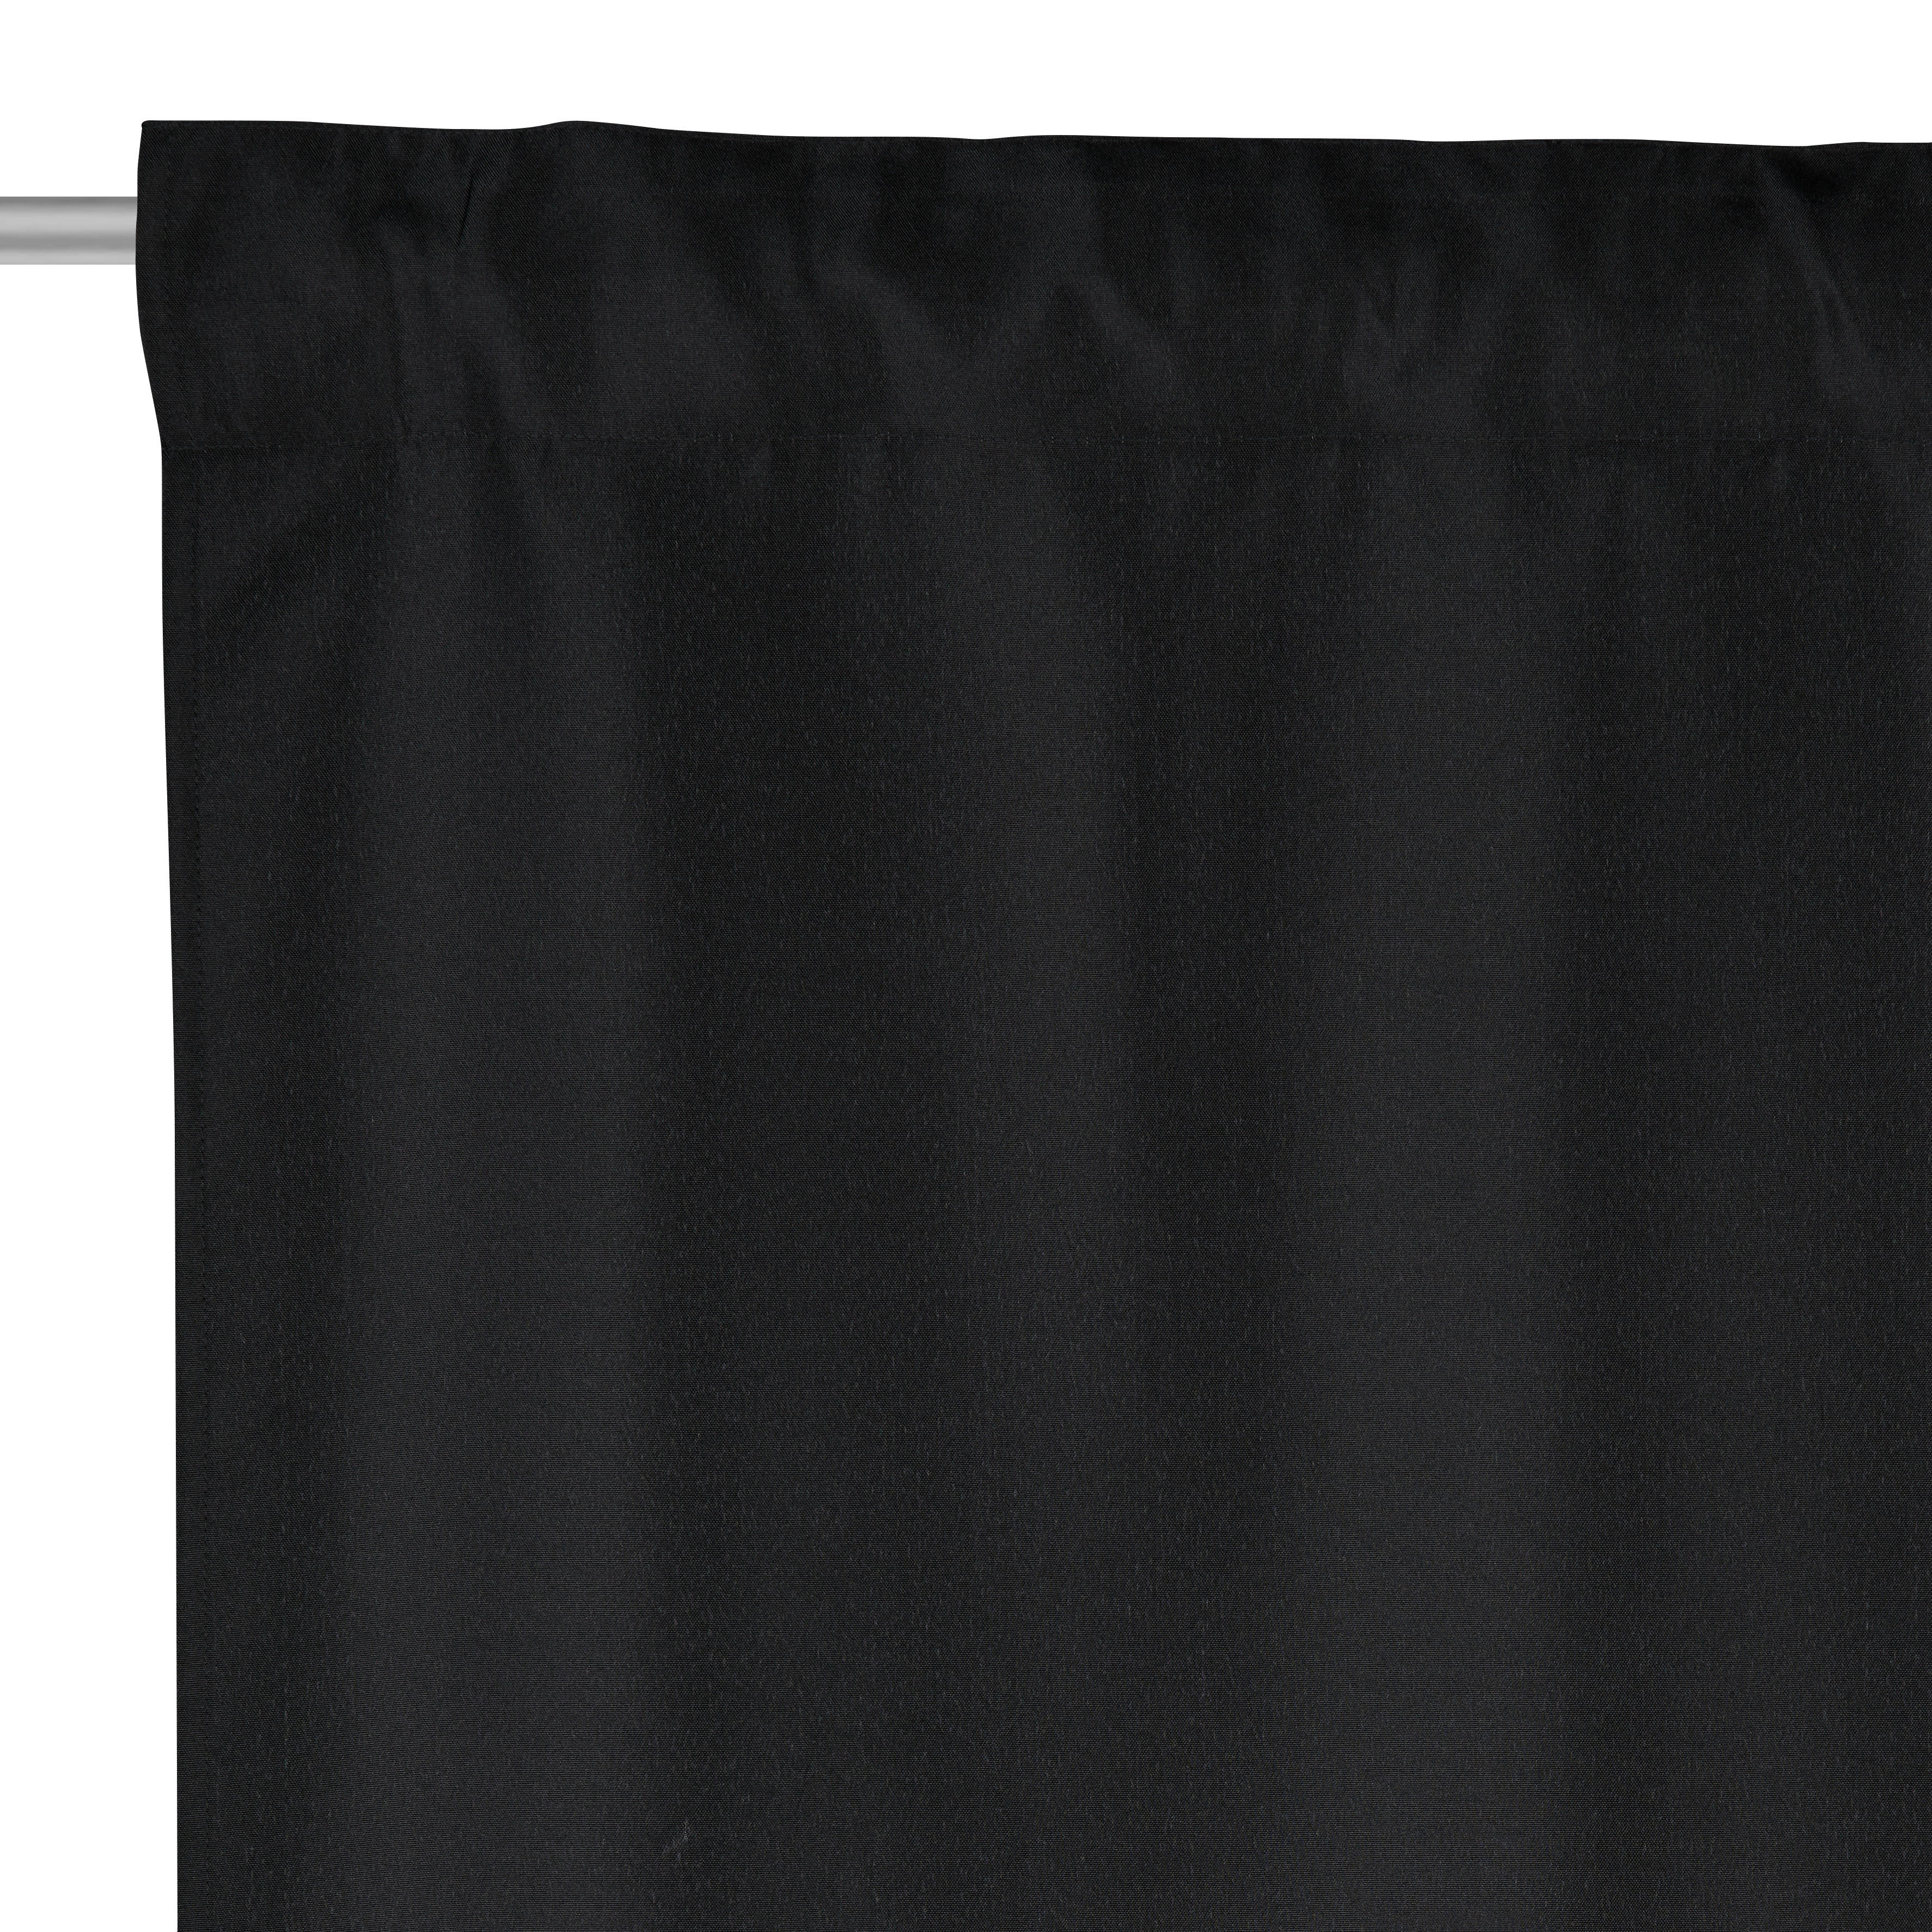 HOTOVÝ ZÁVĚS, neprůsvitné, 140/245 cm - černá, Konvenční, textil (140/245cm) - Boxxx